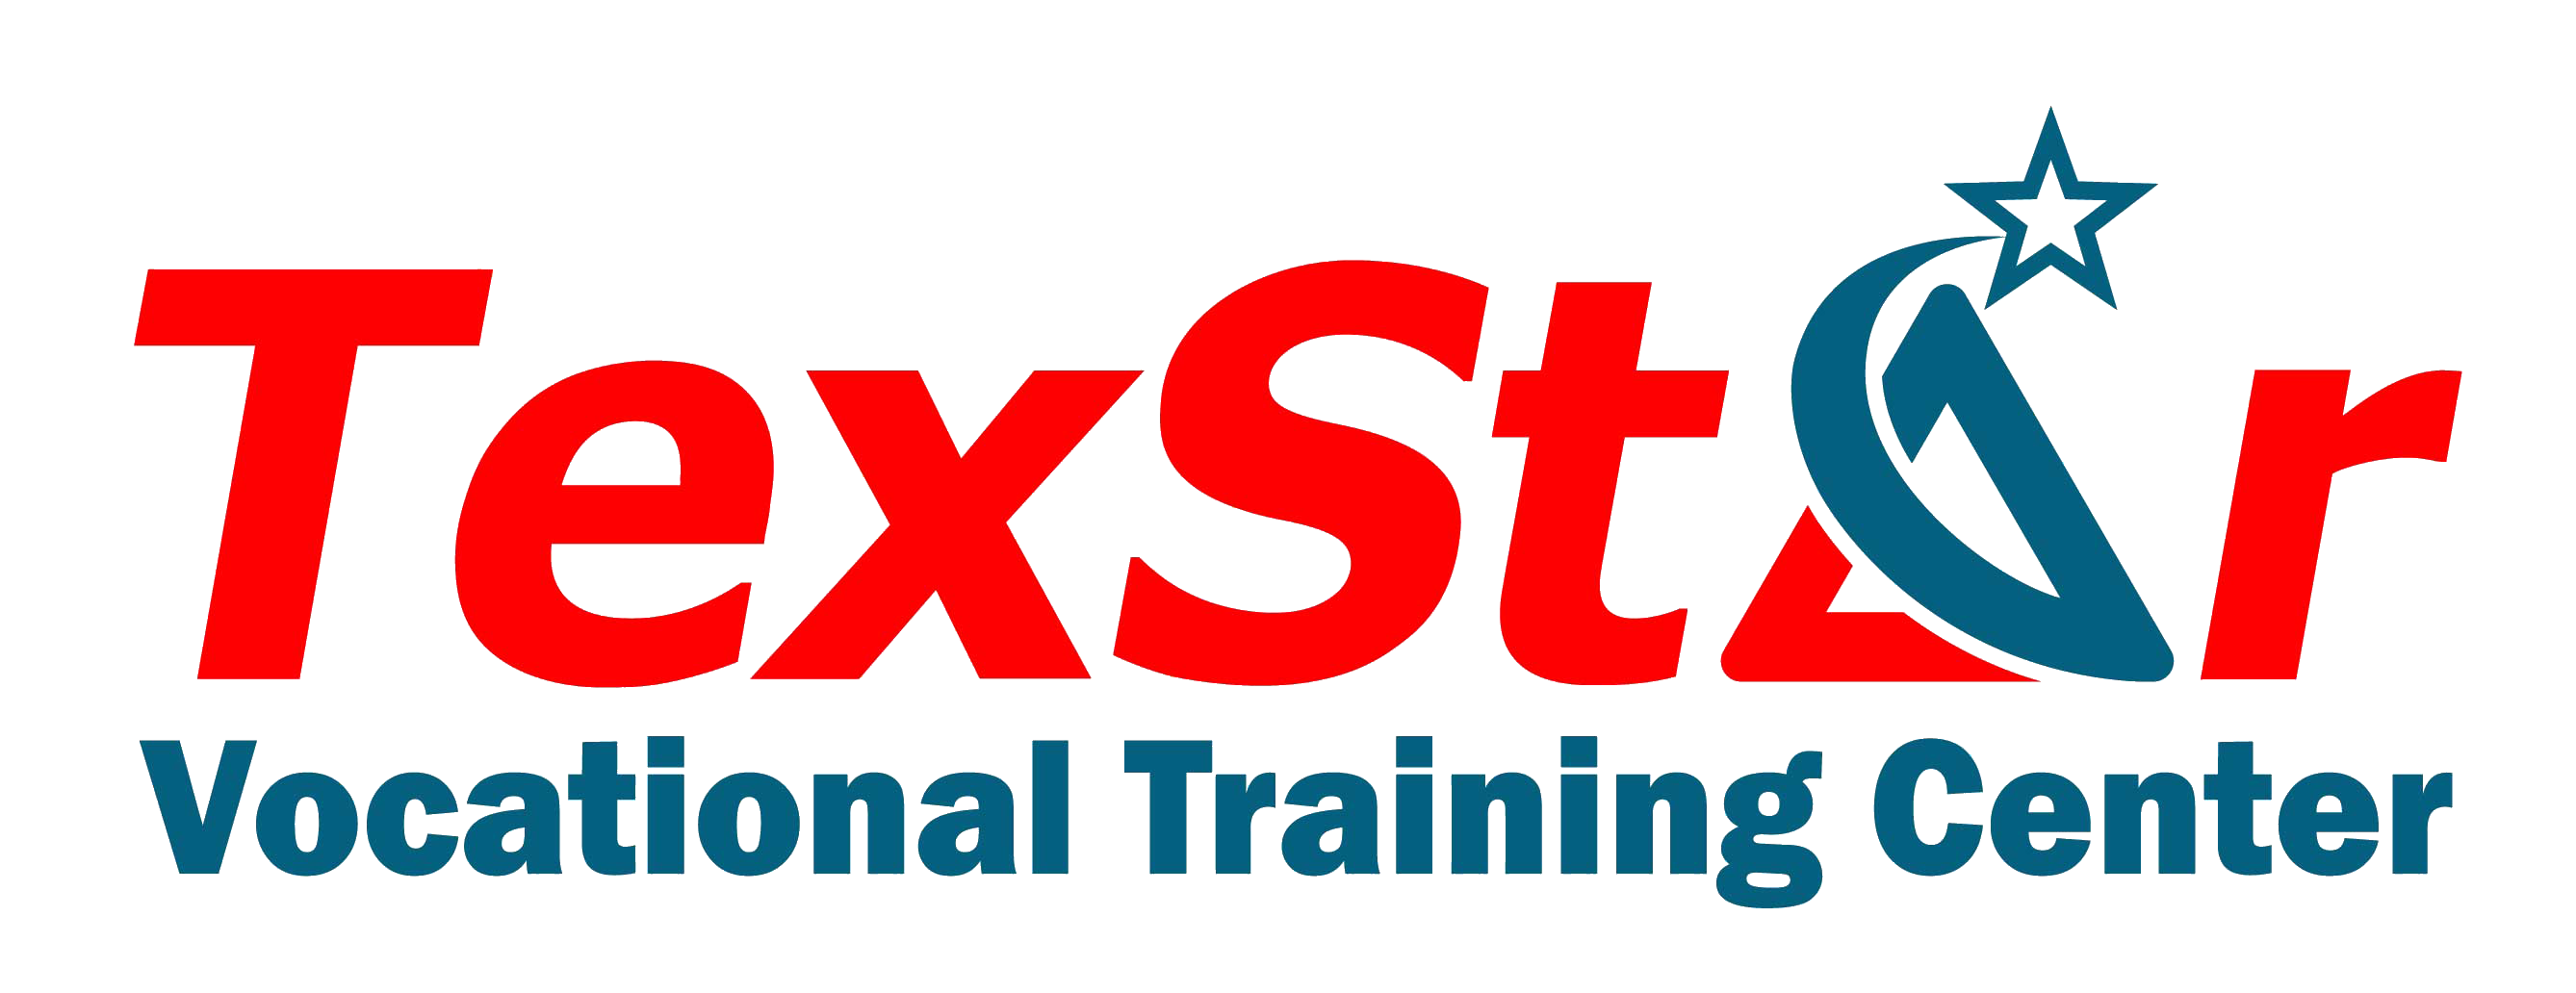 TexStar Vocational Training Center